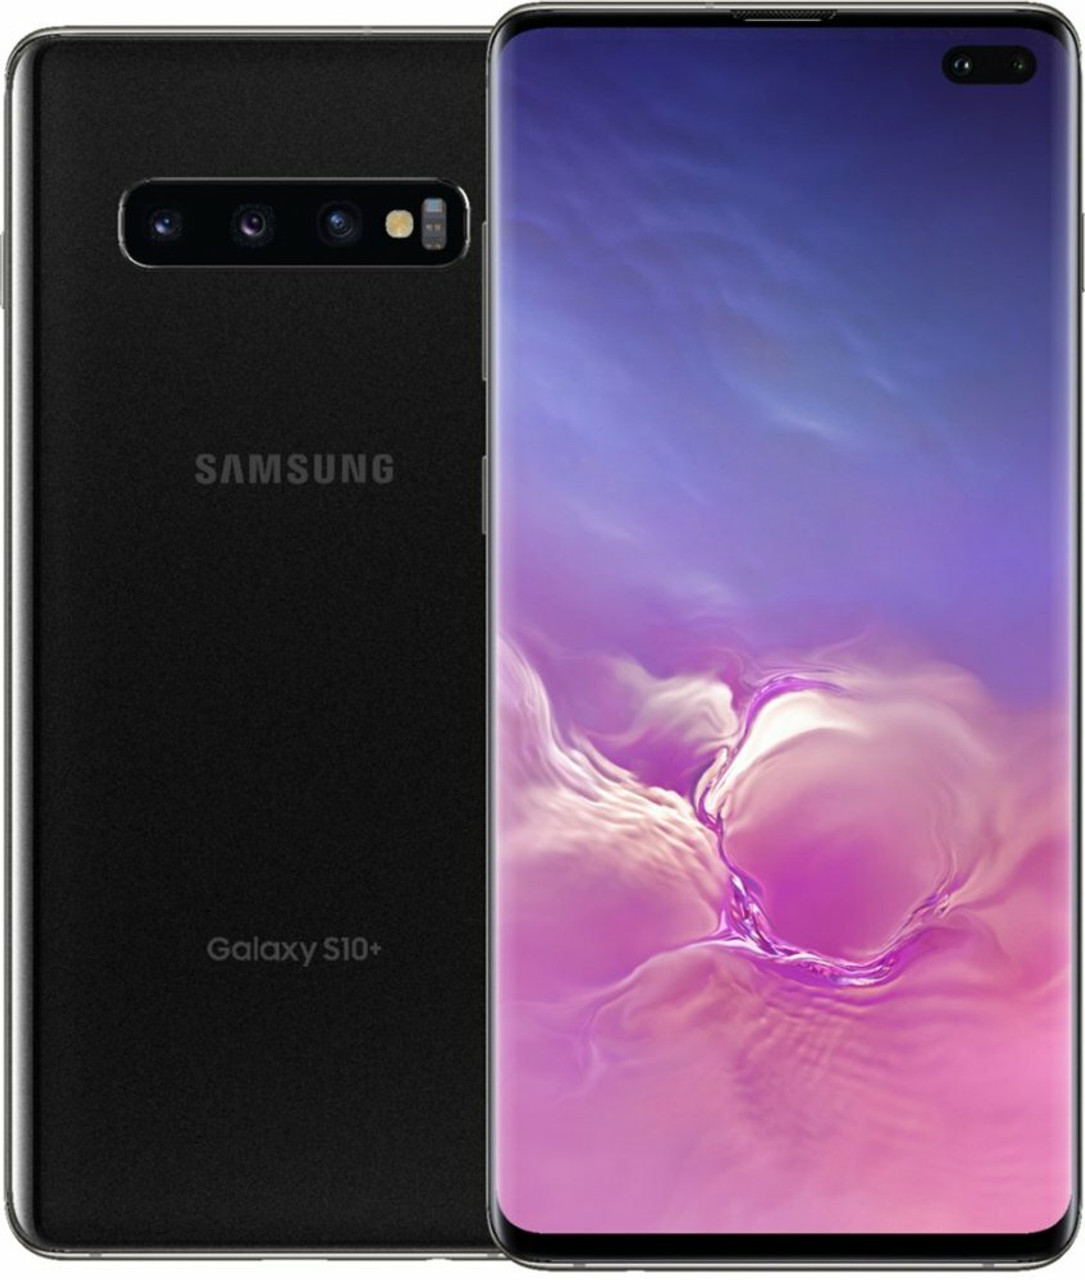 Samsung galaxy s10+ sm-g975u (工場出荷時のロック解除) 6.1 インチ ...